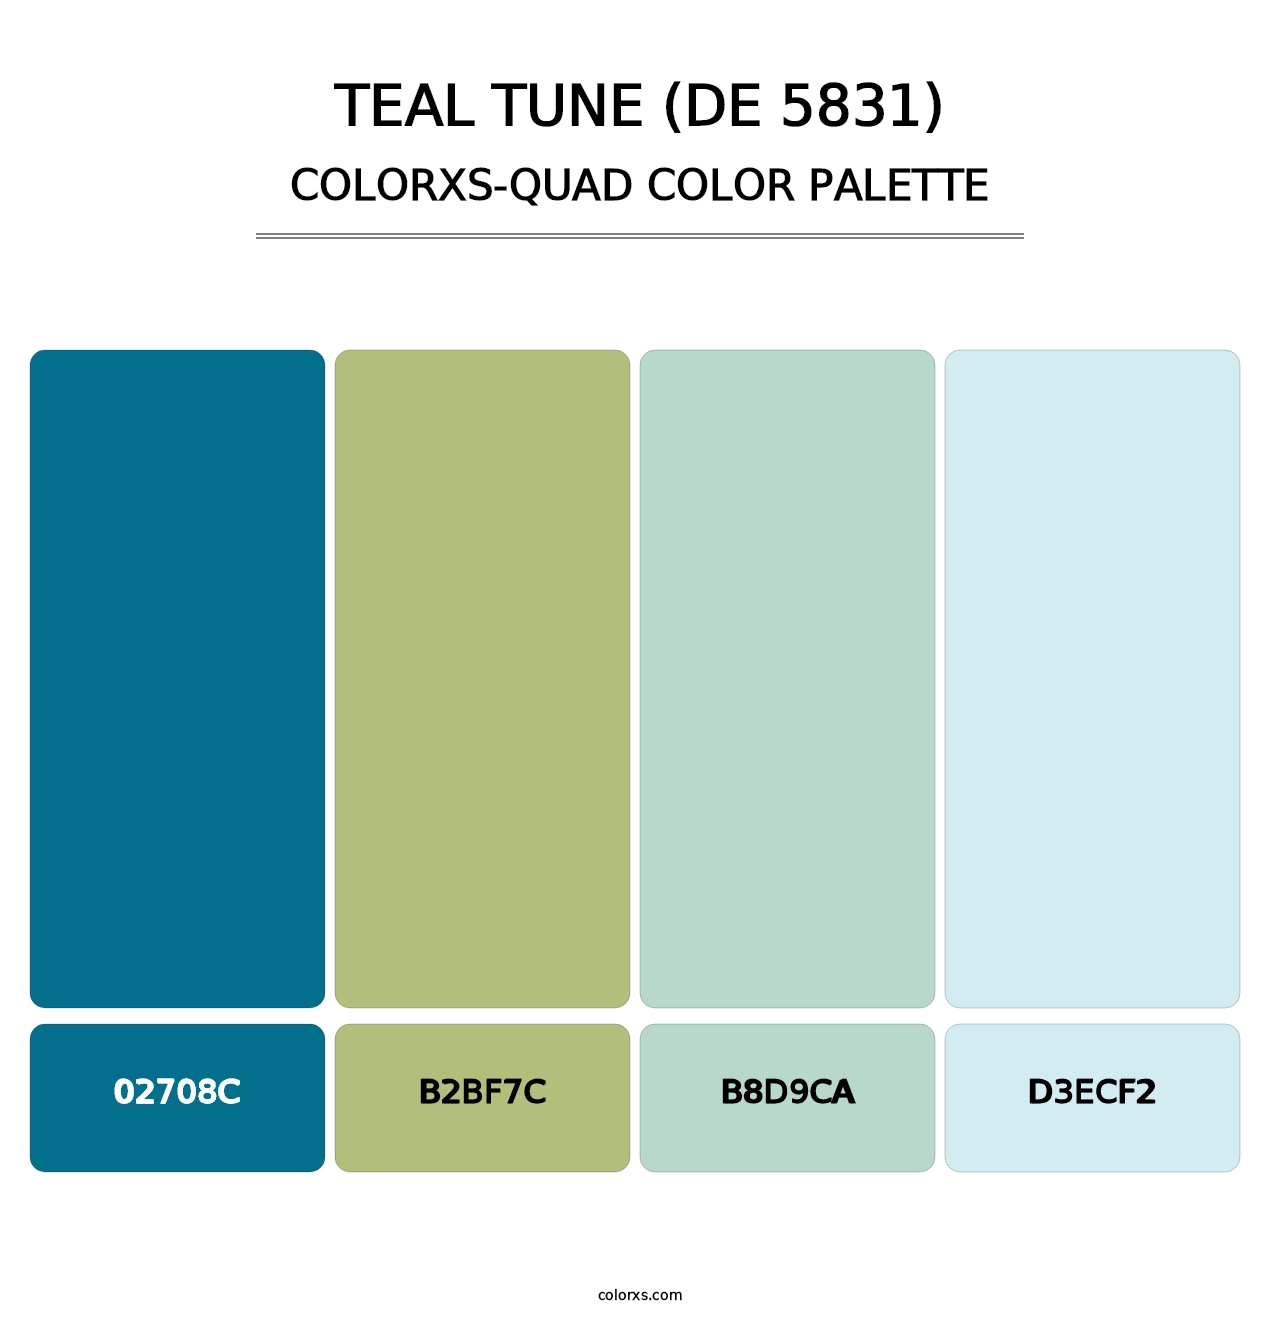 Teal Tune (DE 5831) - Colorxs Quad Palette